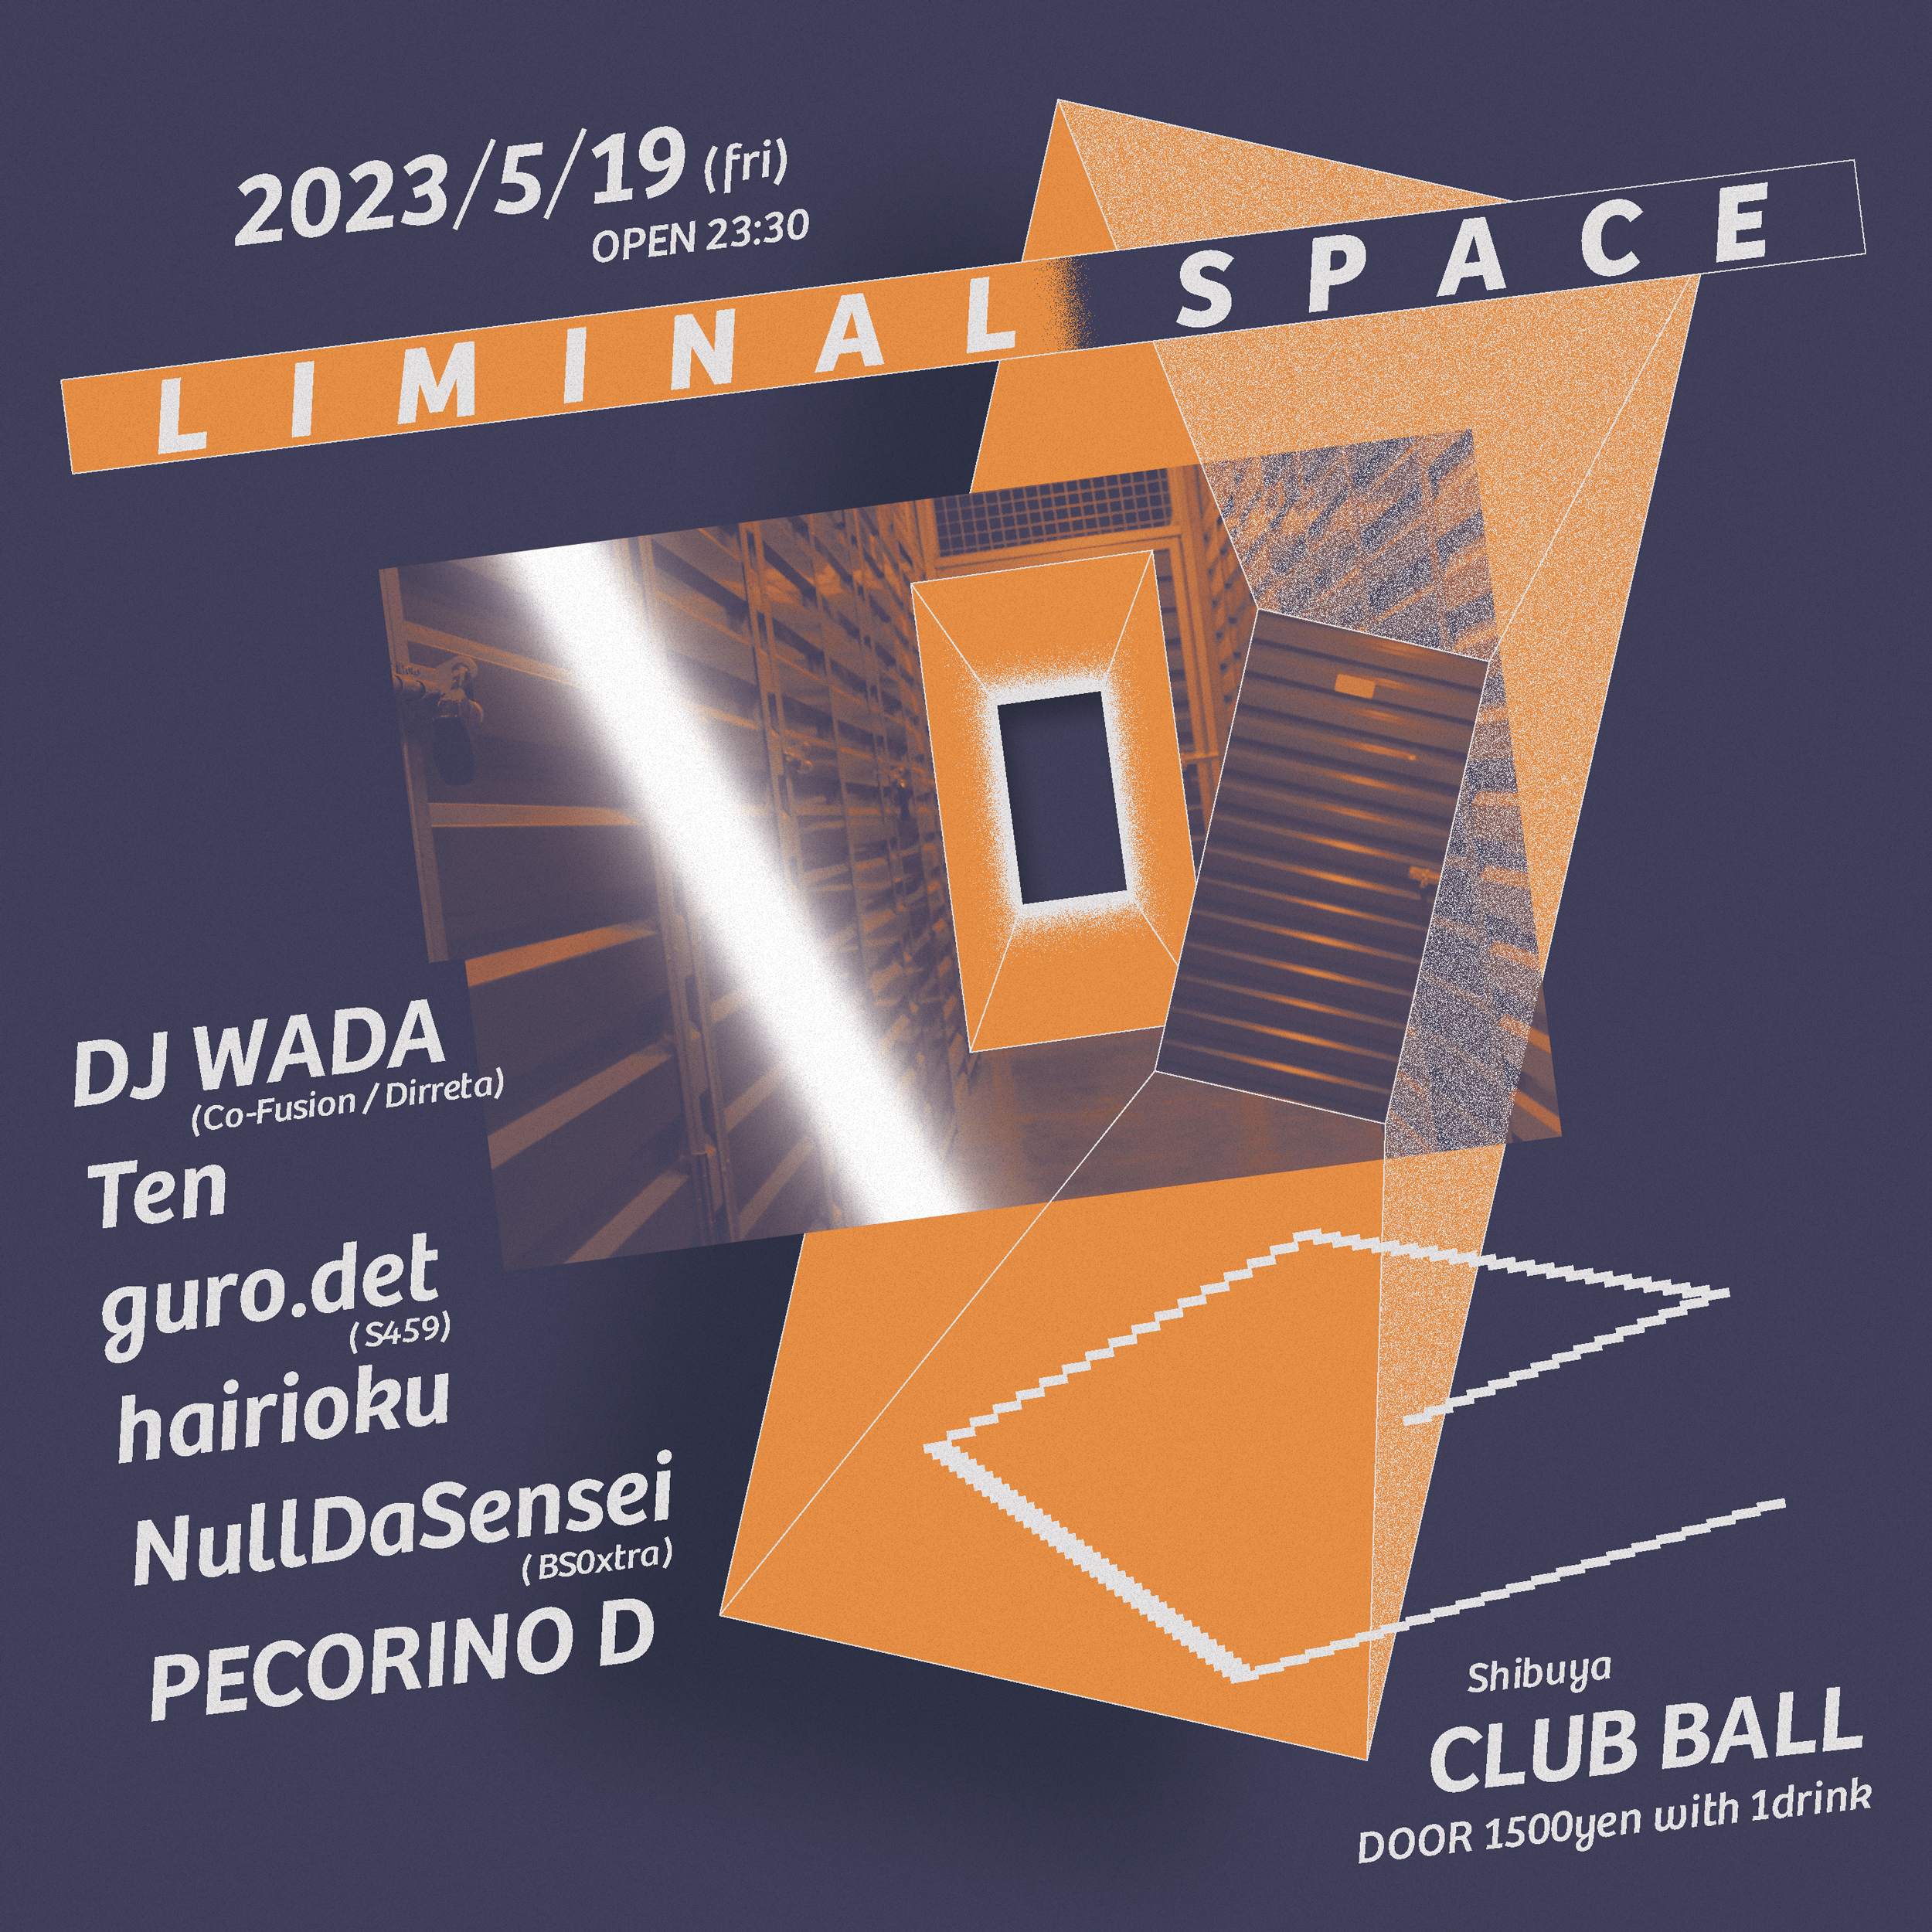 Liminal Space at Shibuya Club Ball, Tokyo